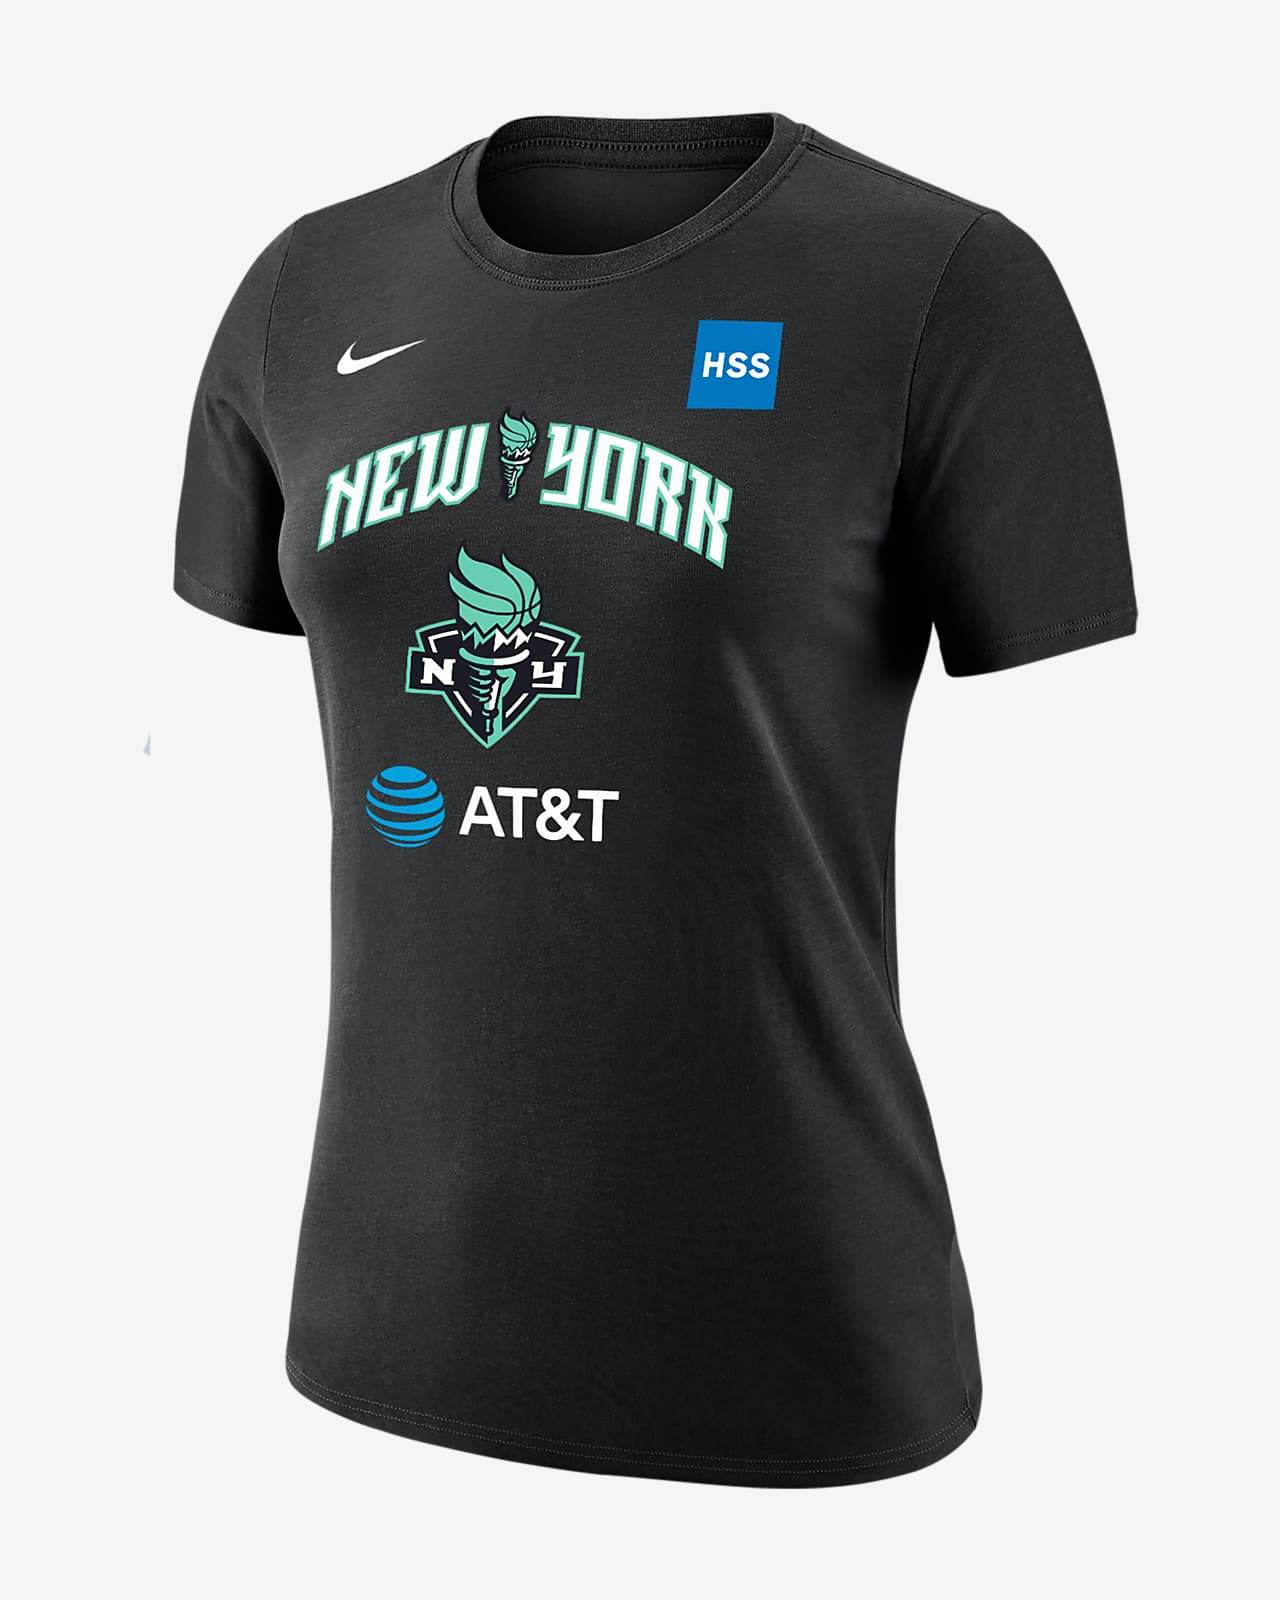 Nike, Shirts, Sabrina Ionescu New York Liberty Jersey New